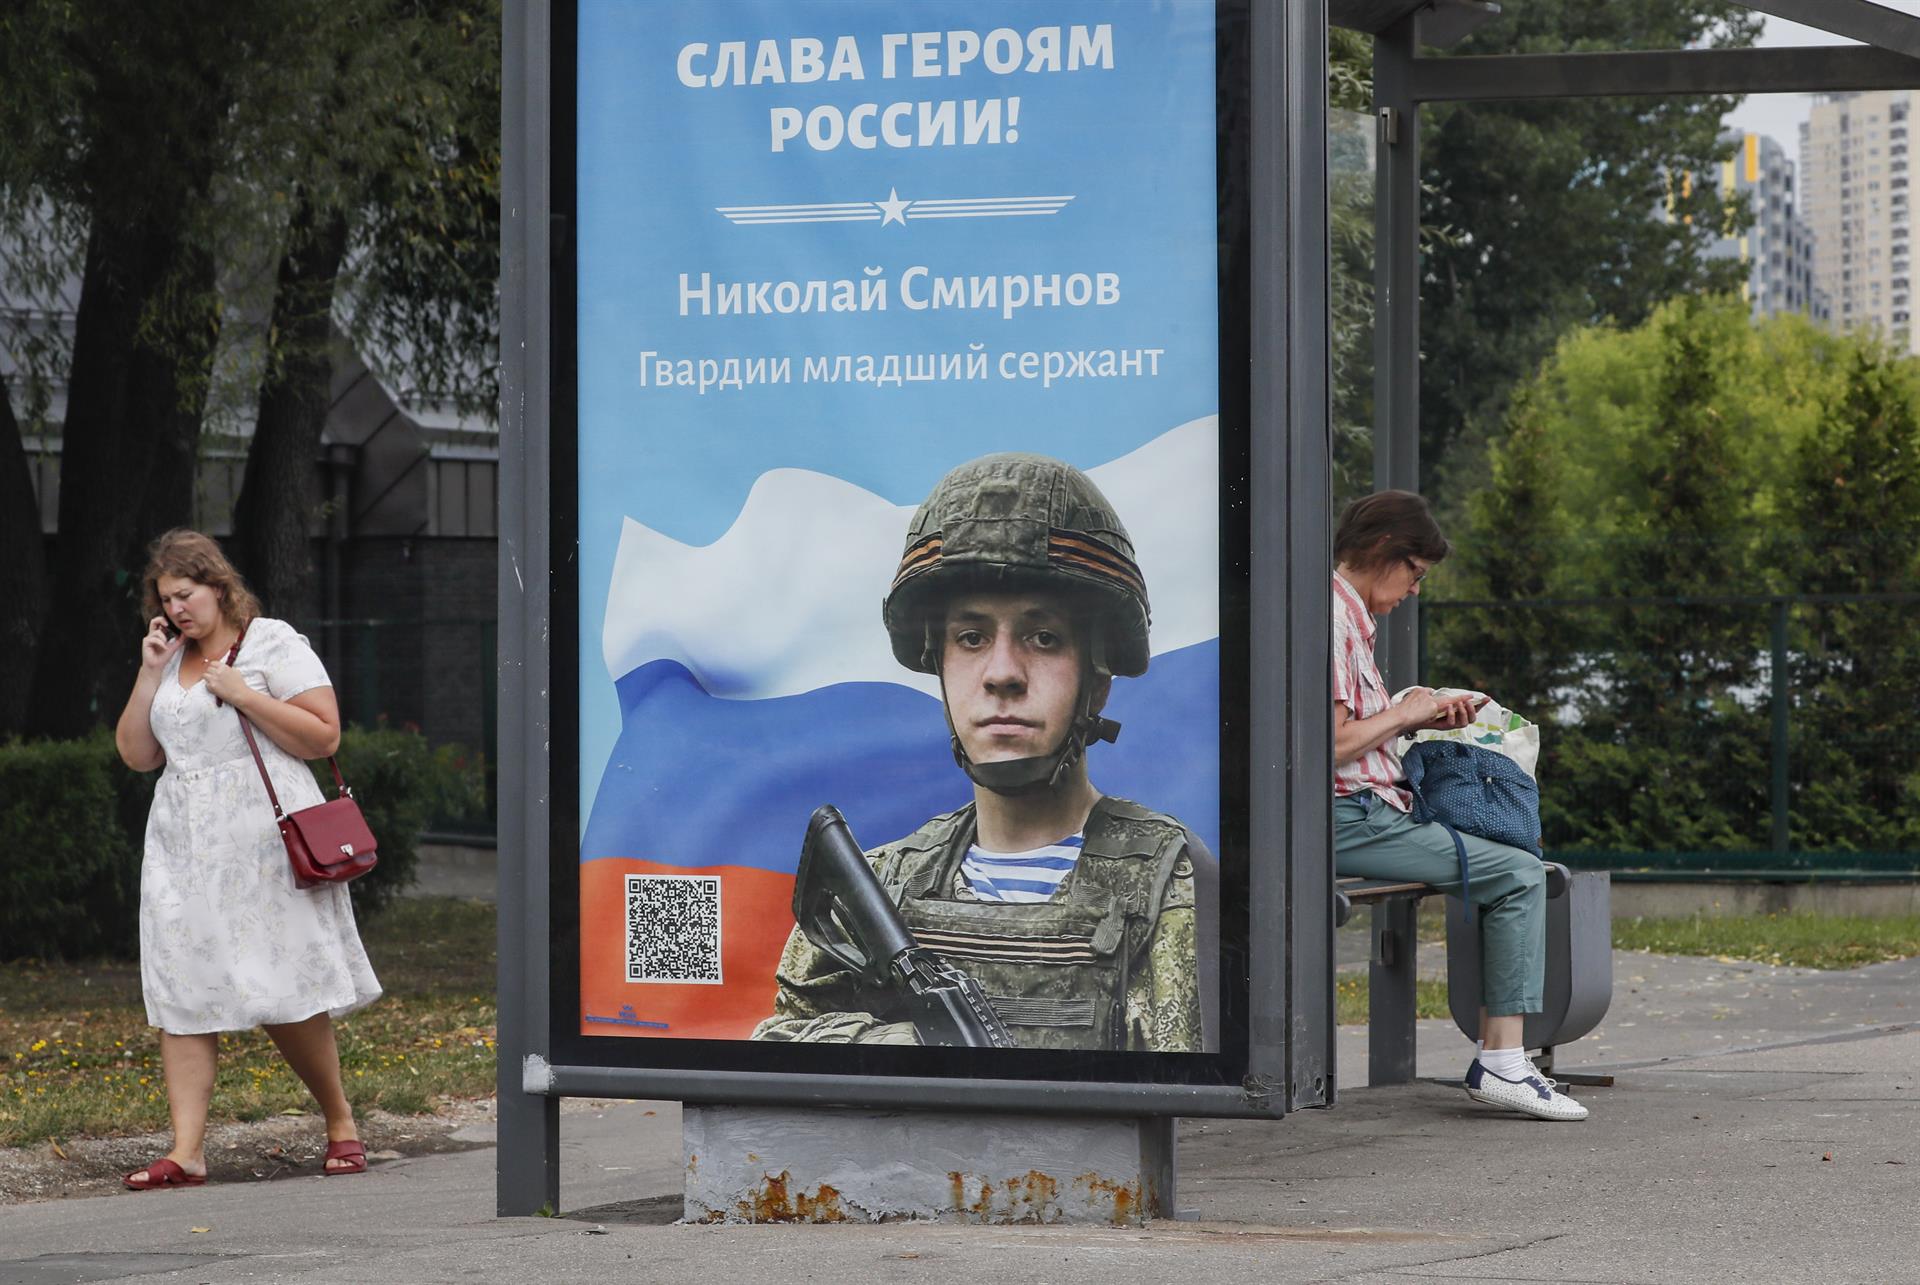 Zaporiyia empieza los preparativos del referéndum para adherirse a Rusia